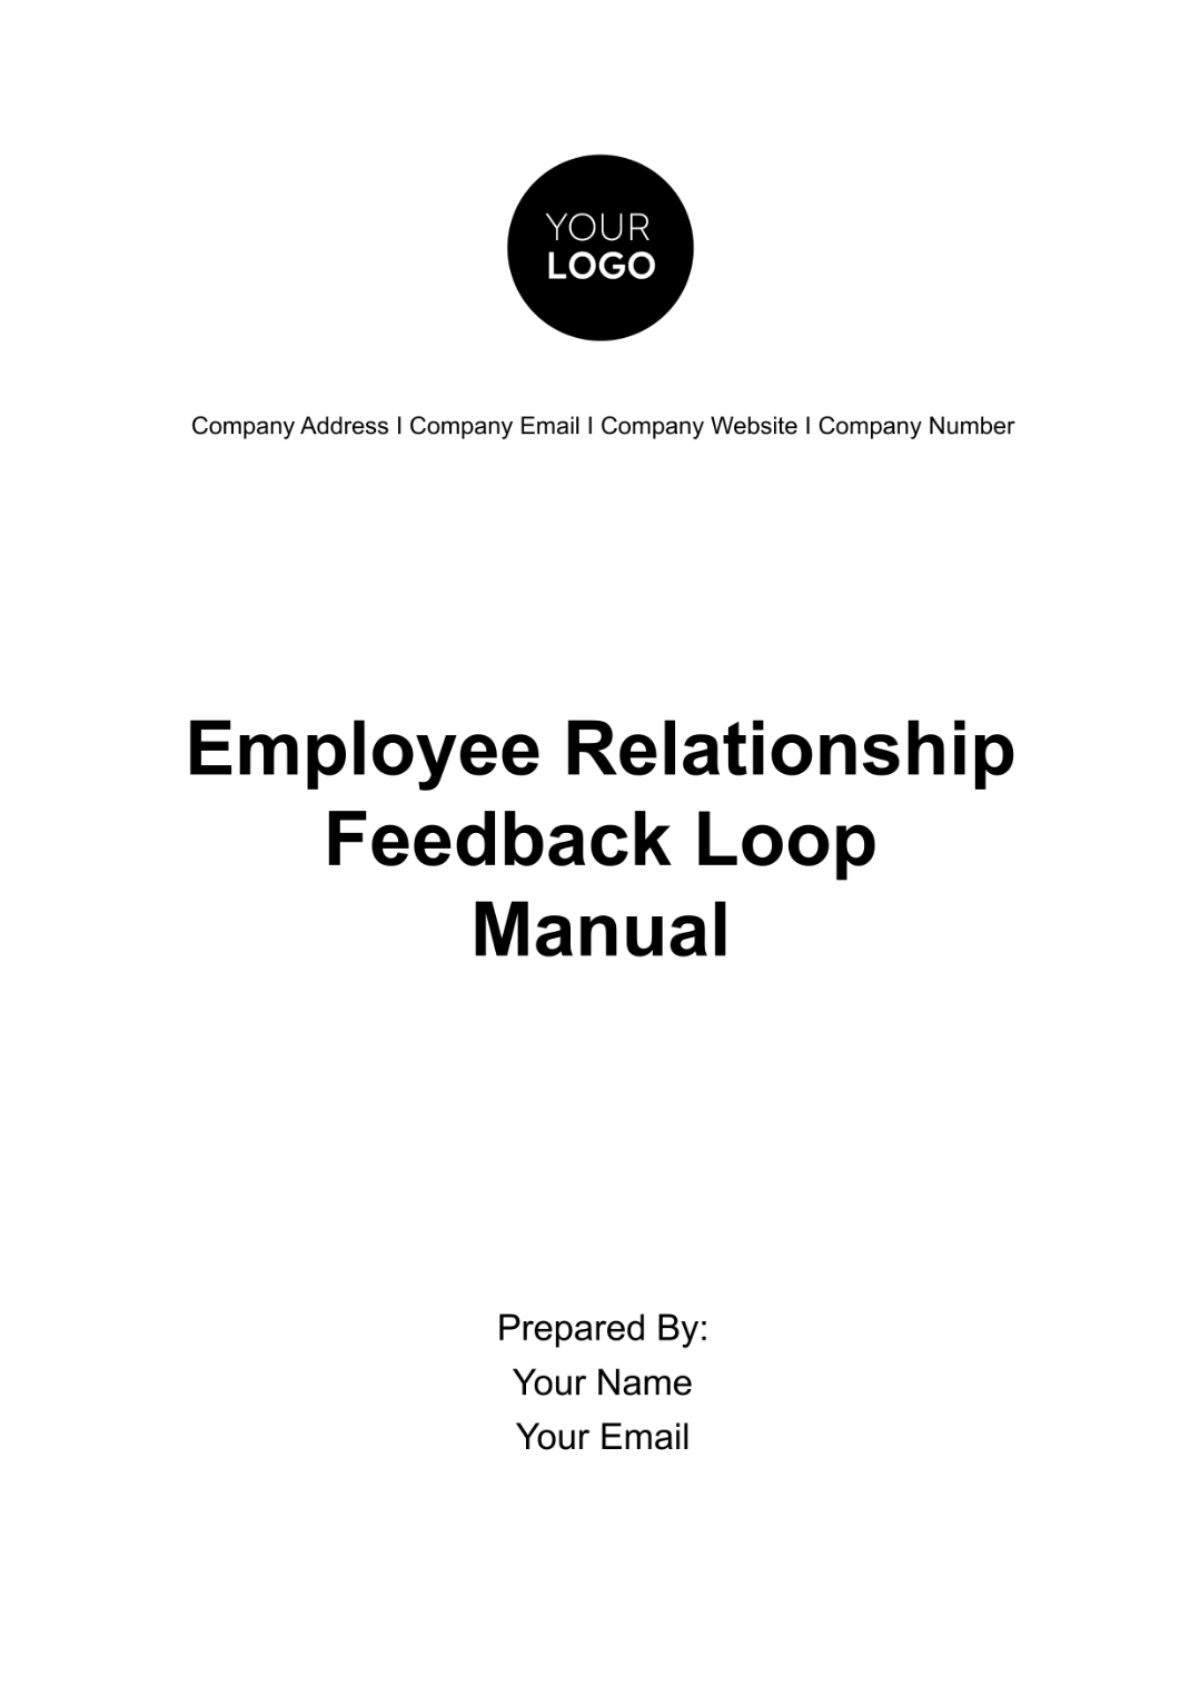 Free Employee Relationship Feedback Loop Manual HR Template